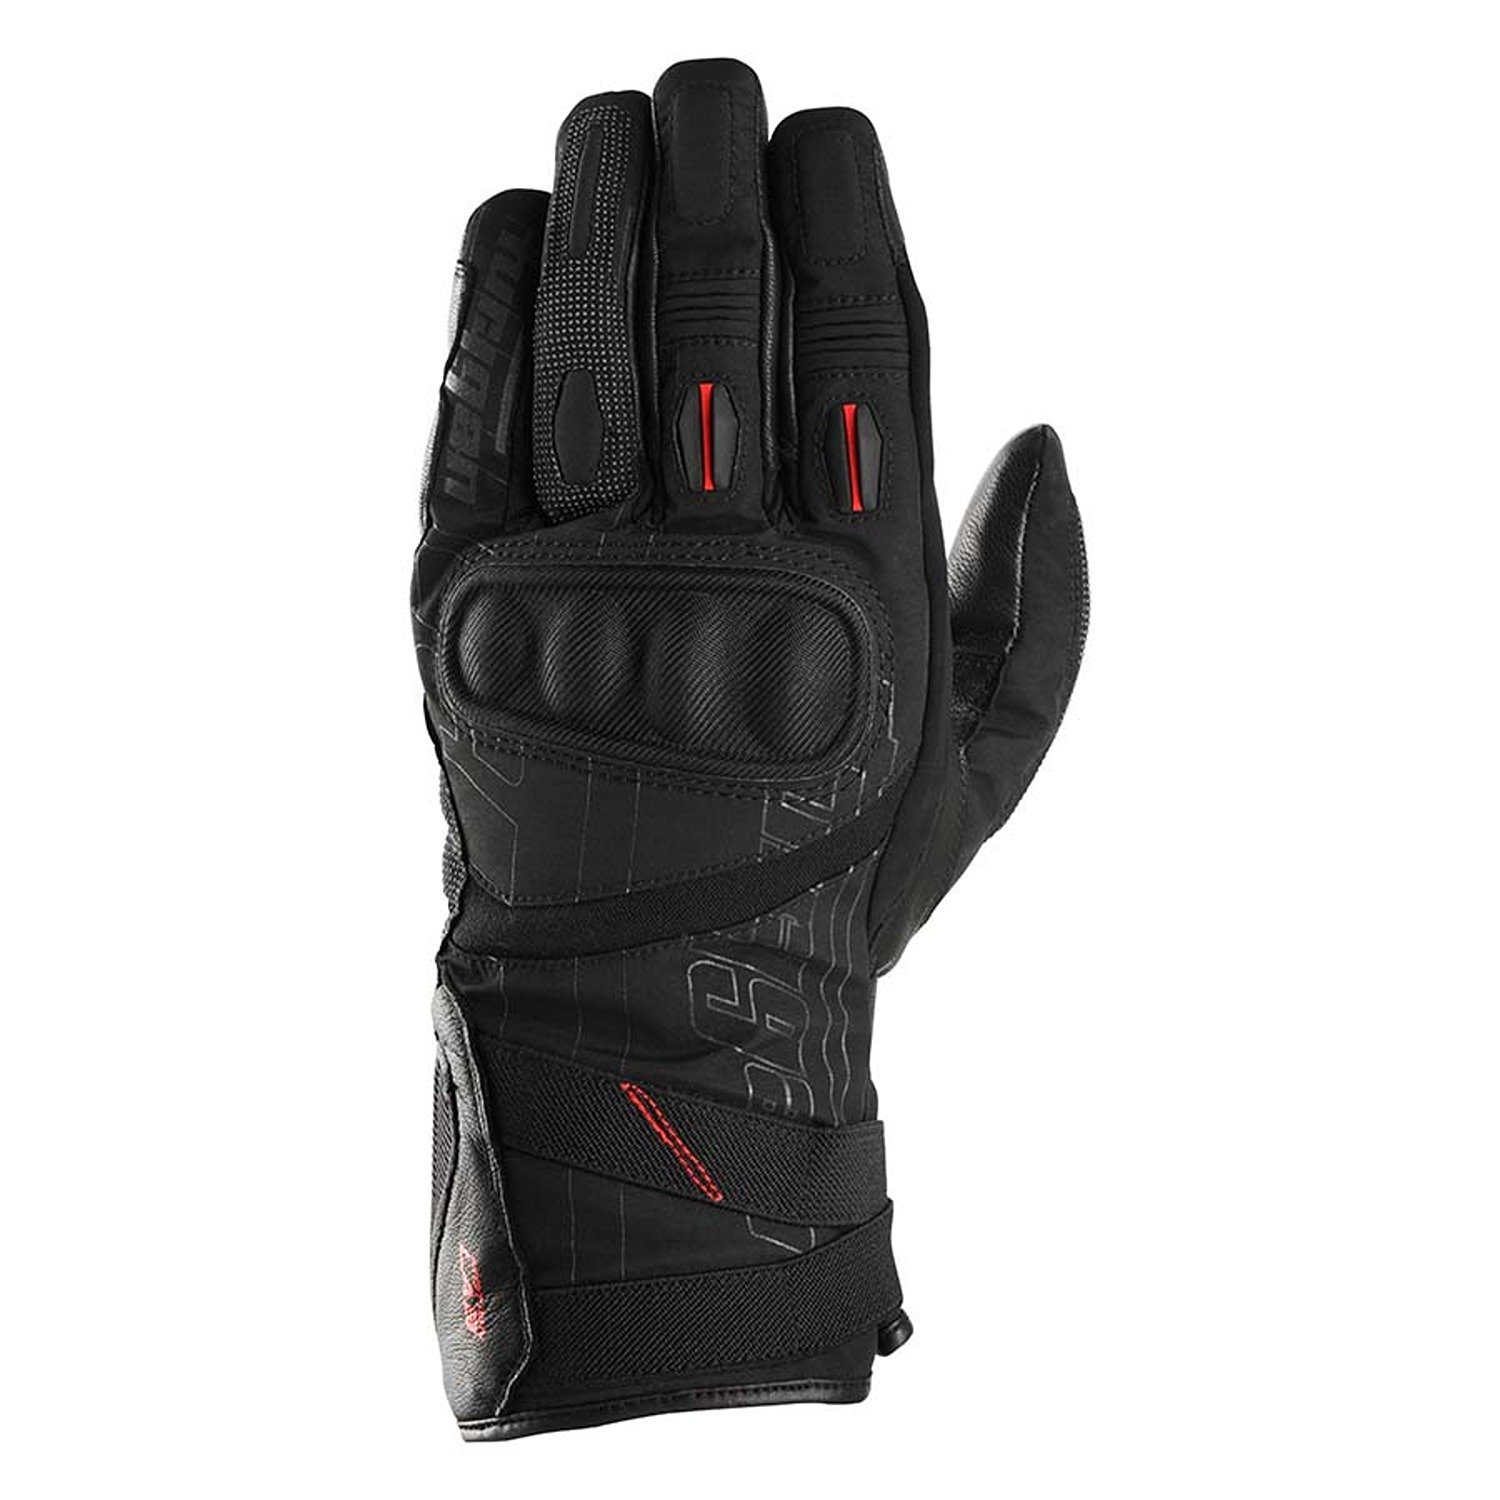 Image of Furygan Nomad Gloves Black Size 2XL EN